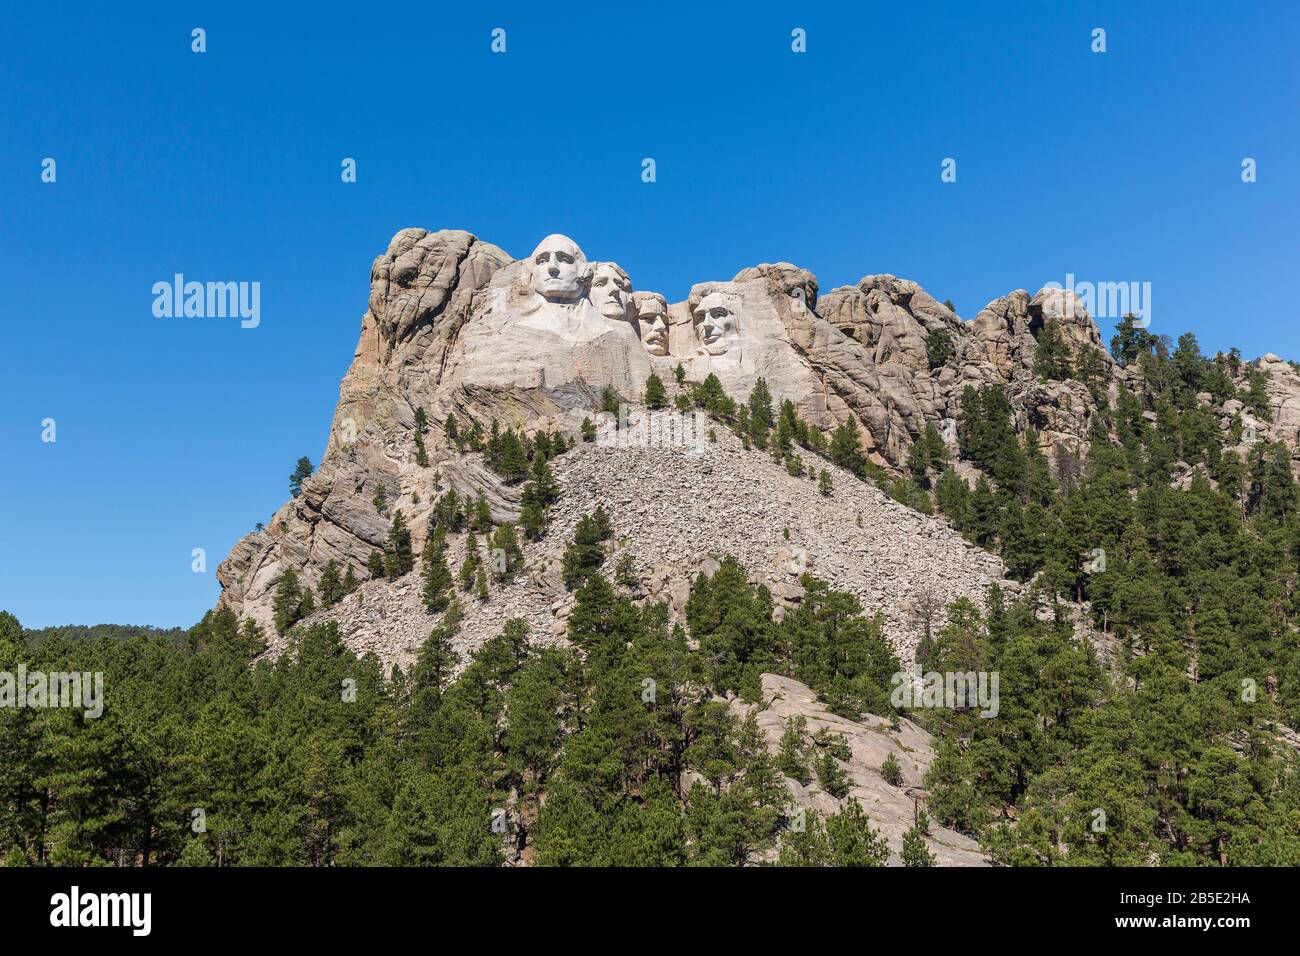 Mt. Rushmore au Dakota du Sud avec 4 visages du président des États-Unis sculptés dans la roche. Banque D'Images